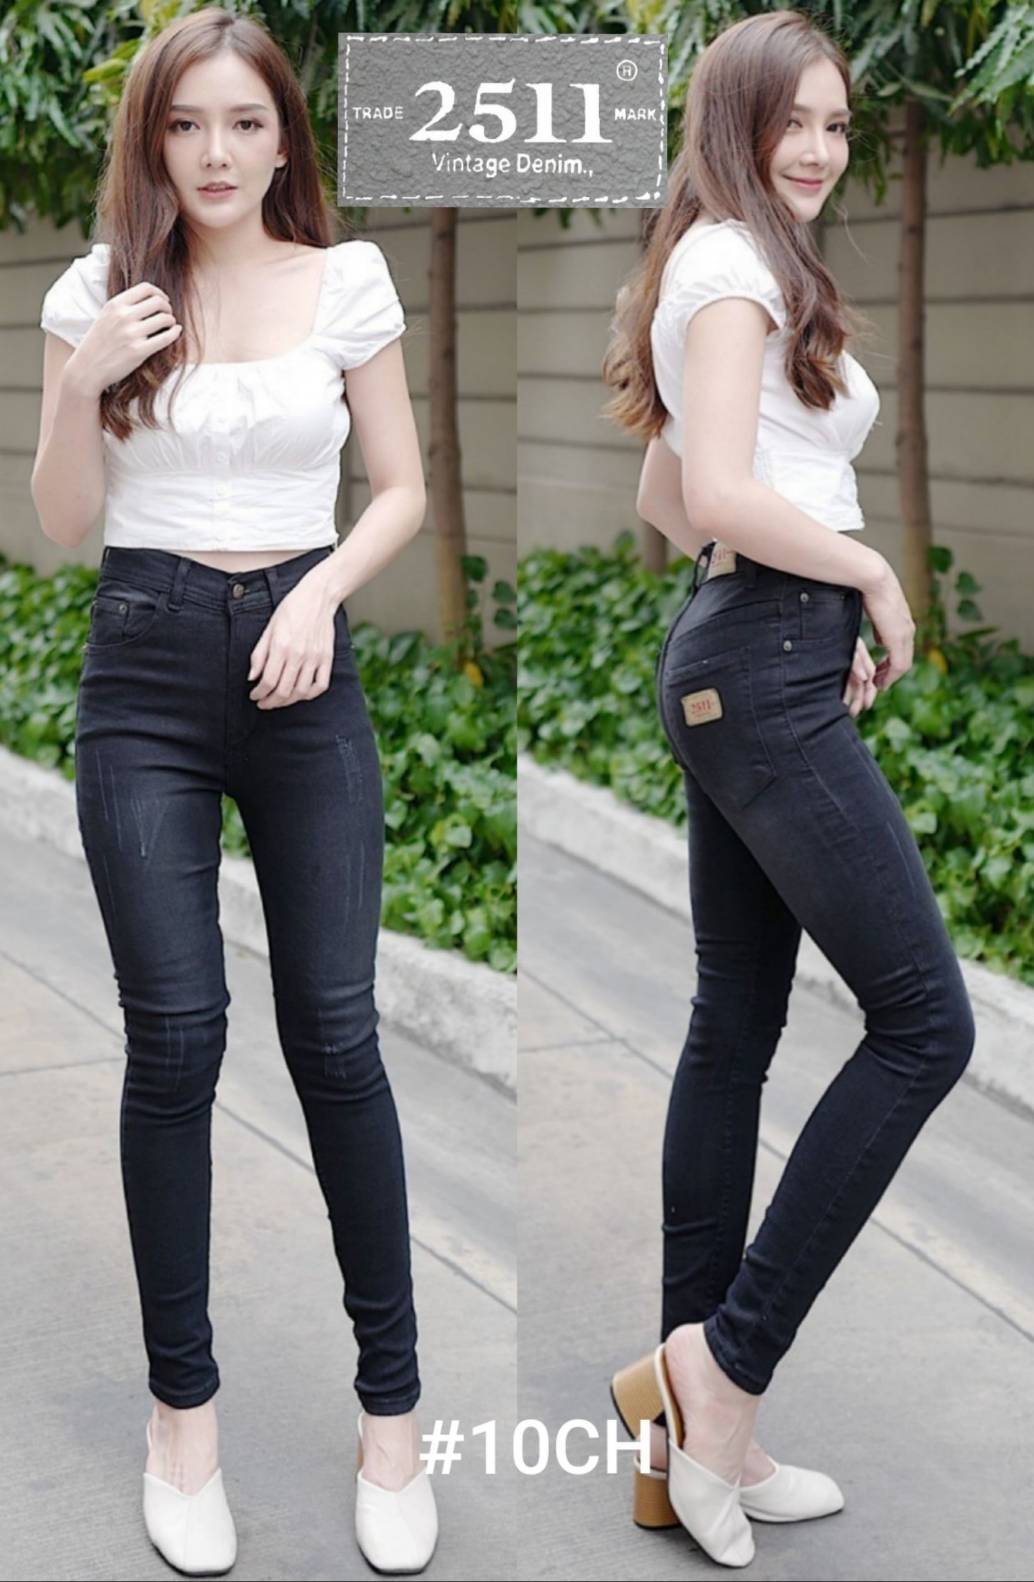 2511 Vintage Denim Jeans by GREATกางเกงยีนส์ ผญ กางเกงยีนส์ กางเกงยีนส์ยืด กางเกงยีนส์ เอวสูง ยีนส์เอวสูง กางเกงแฟชั่นผู้หญิง มี5สีให้เลือก